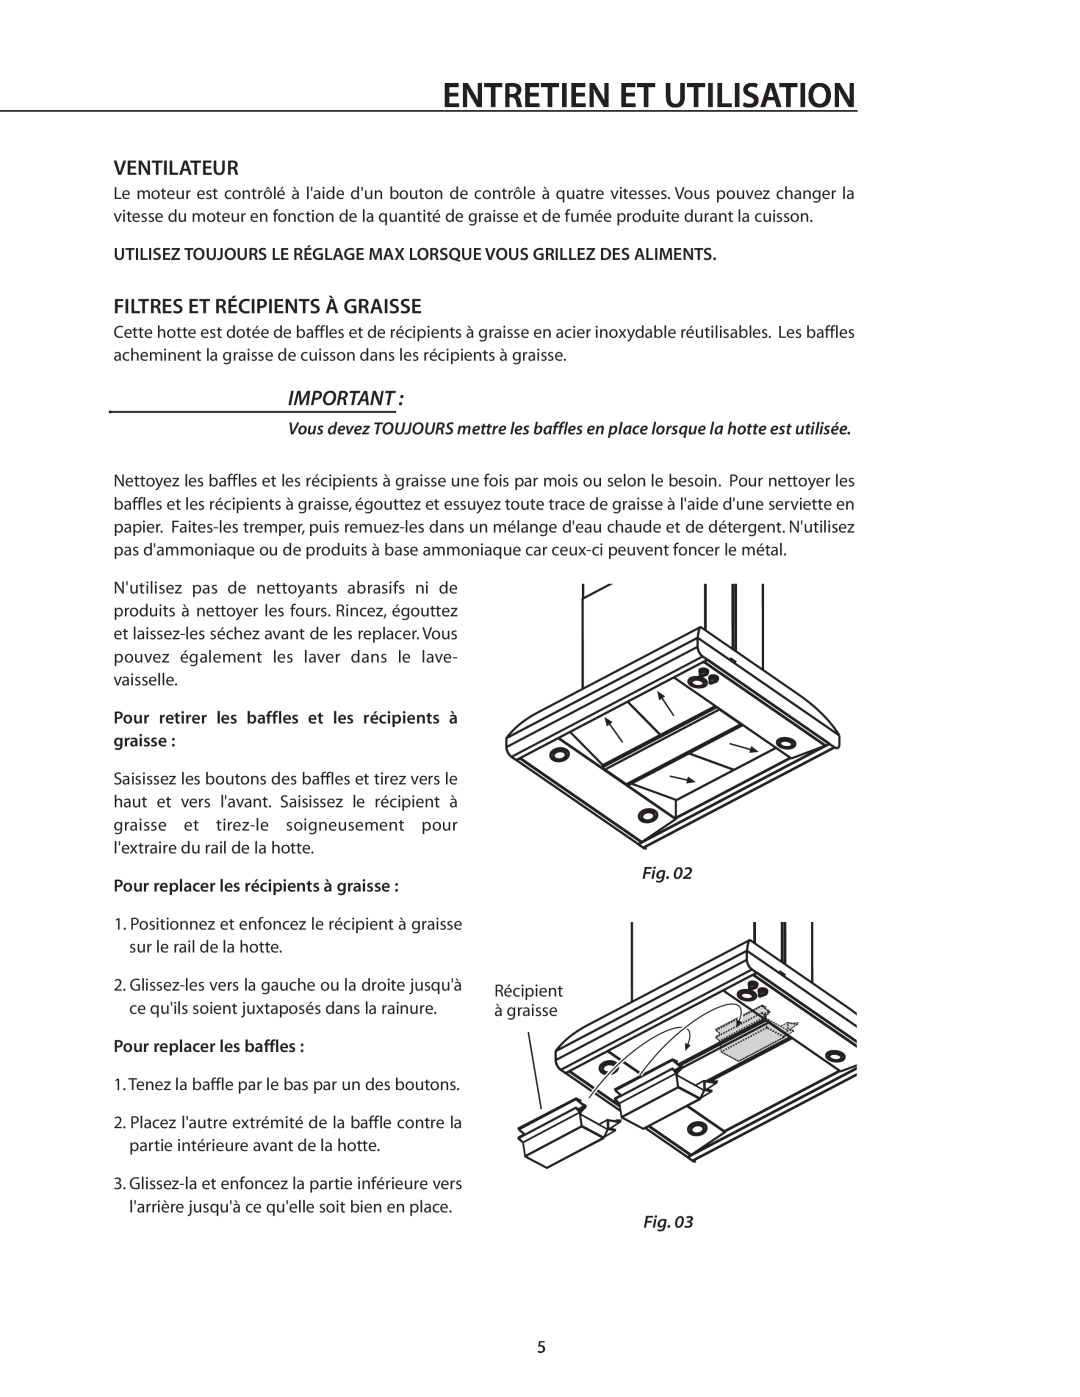 DCS IVS52, IVS40 manual Ventilateur, Filtres Et Récipients À Graisse, Entretien Et Utilisation 